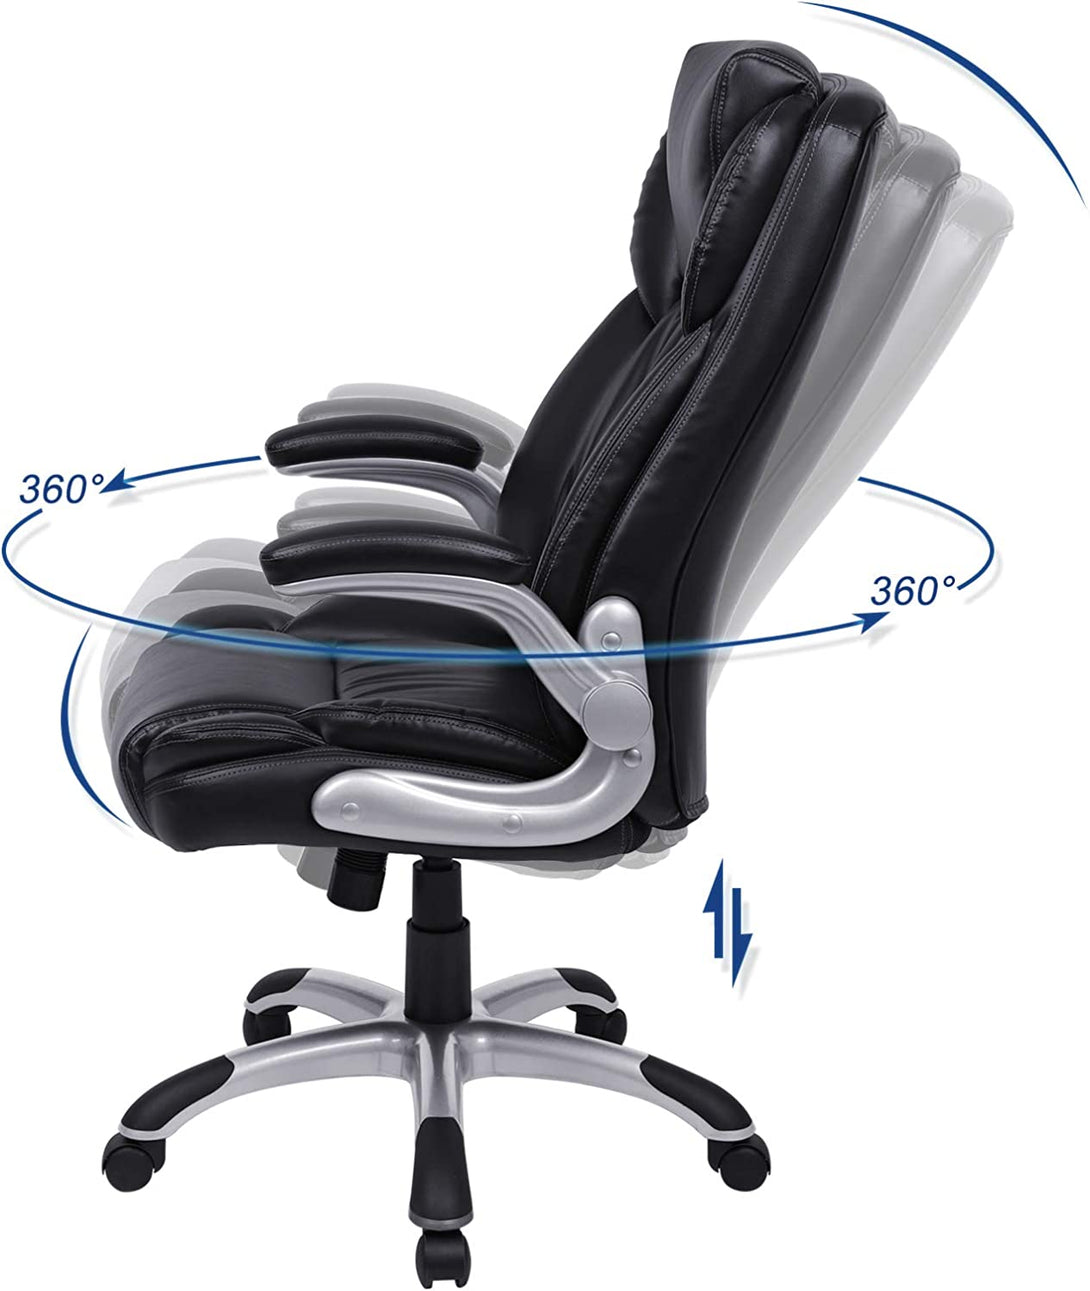 Prémium irodai szék, vezetoi szék, fekete-VASBÚTOR